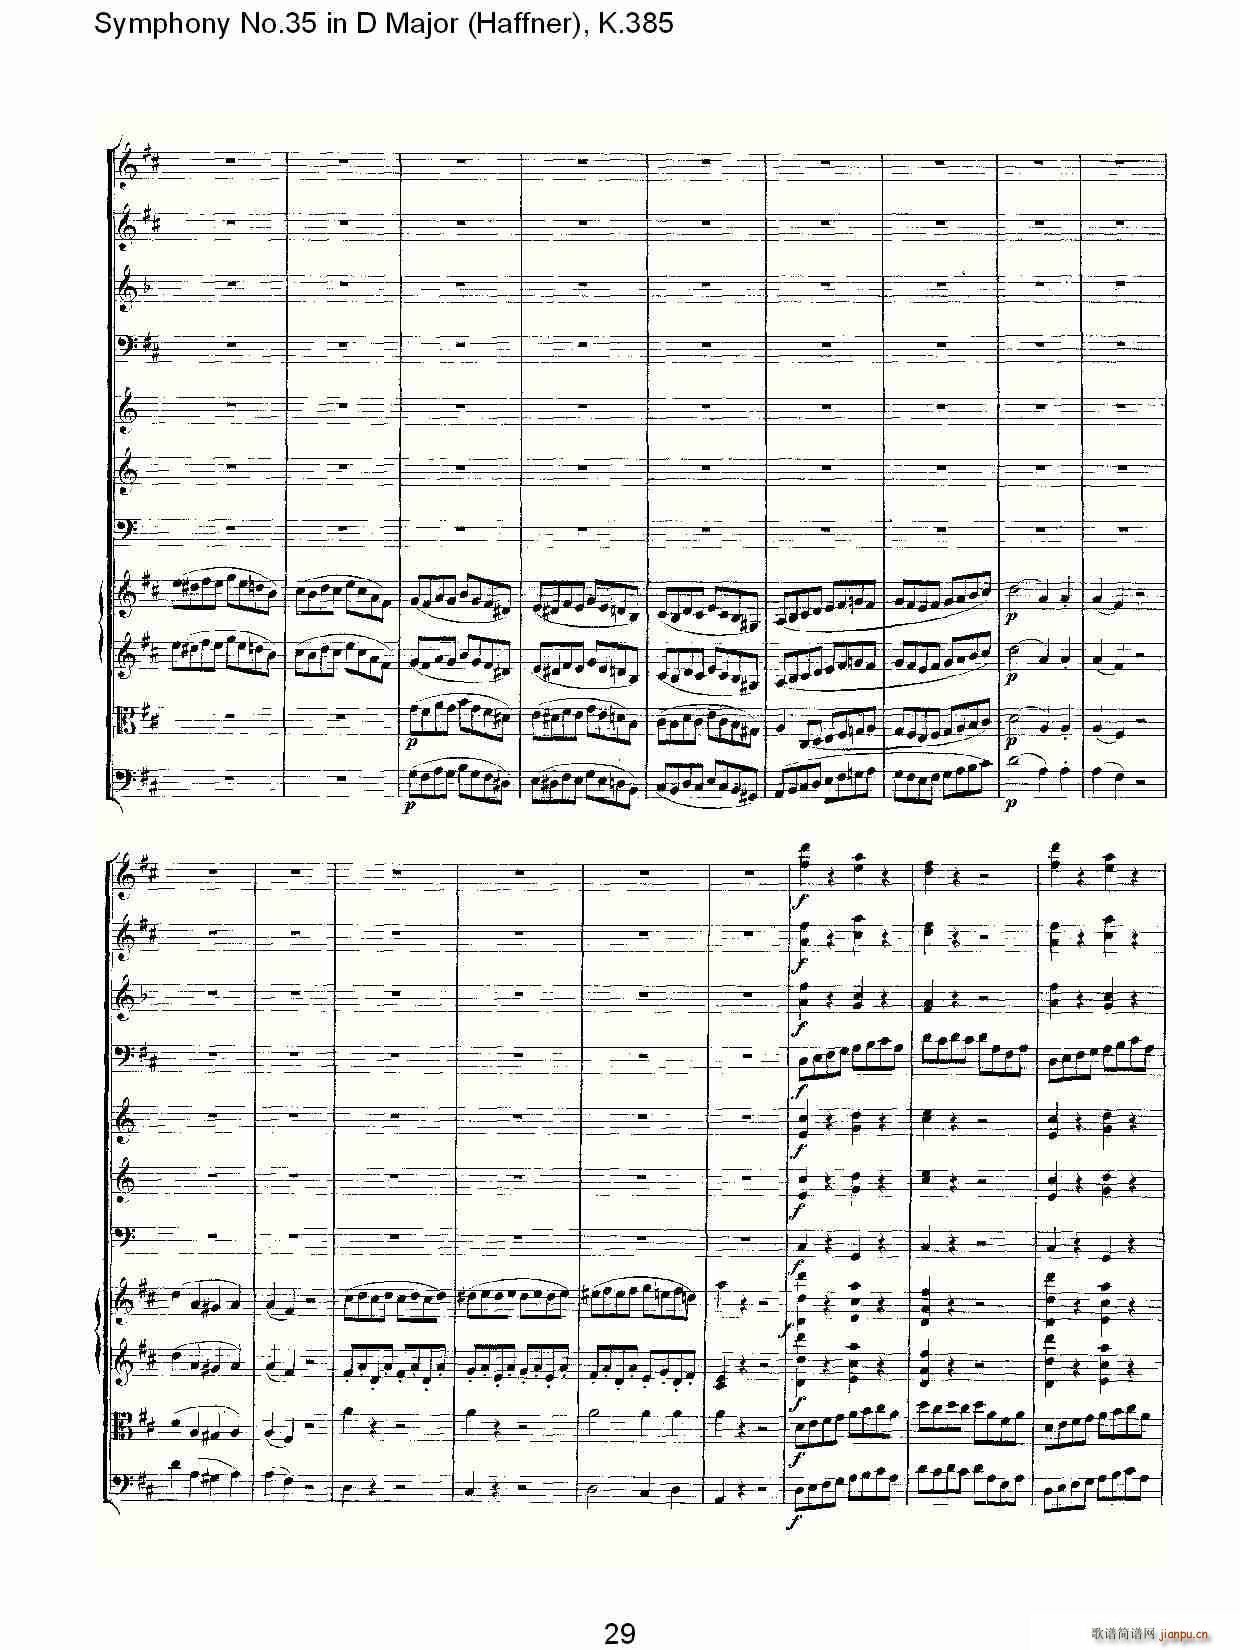 Symphony No.35 in D Major, K.385(ʮּ)29